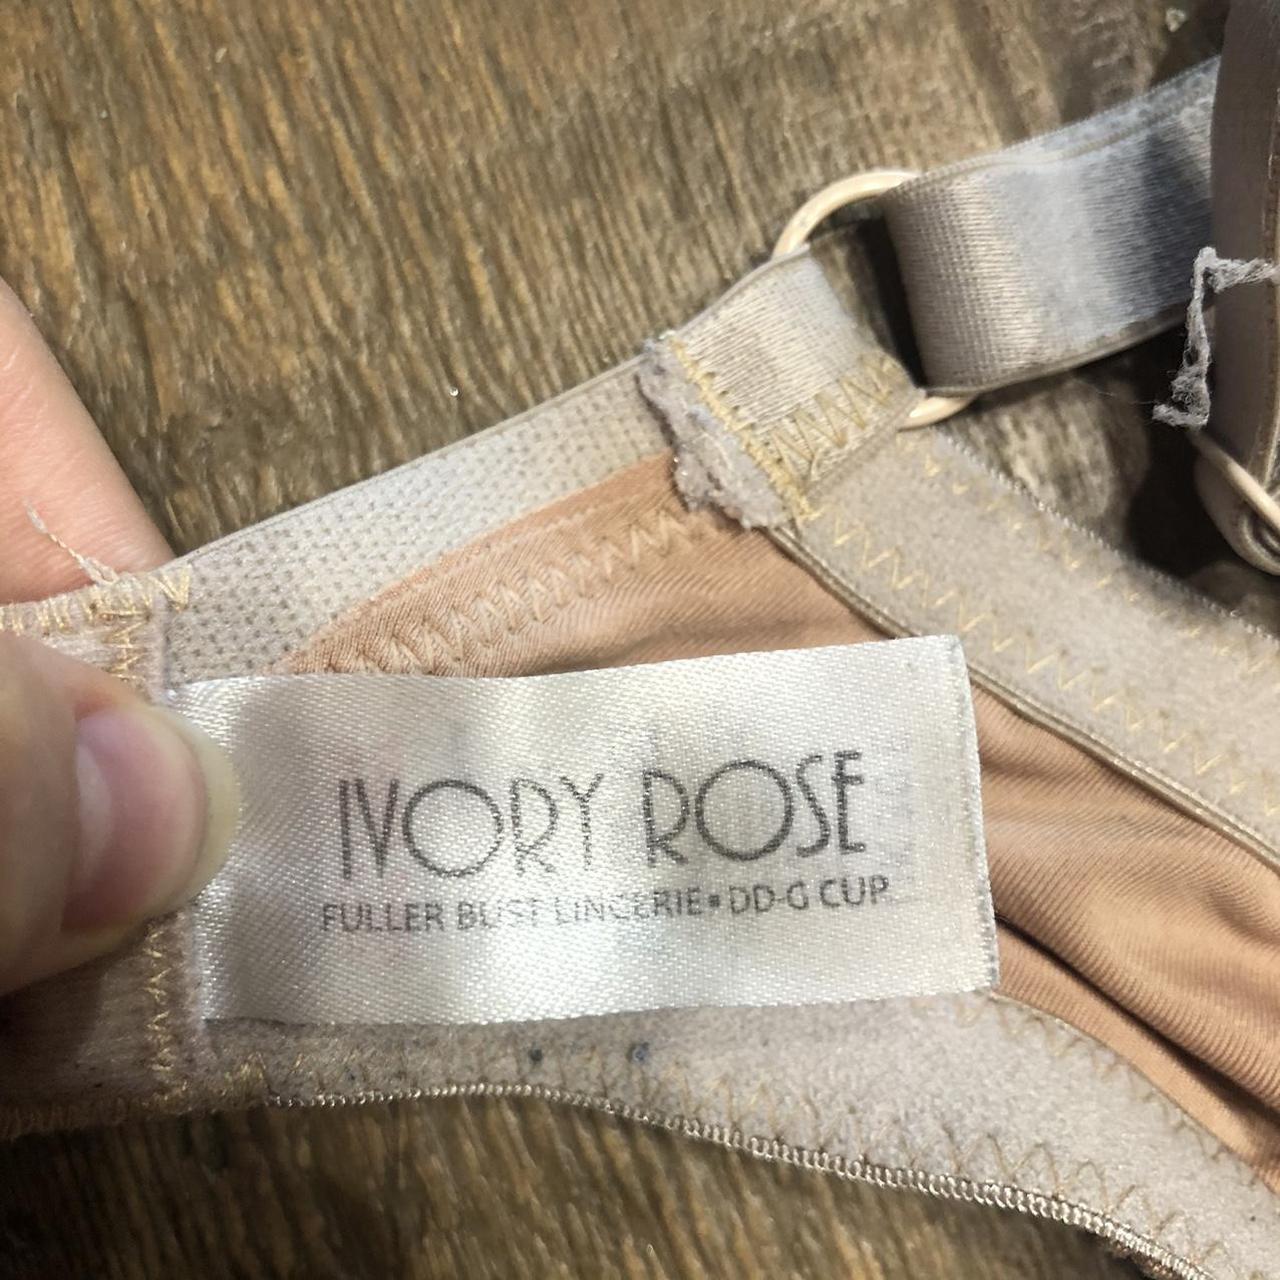 Product Image 3 - Ivory Rose nude t-shirt bra